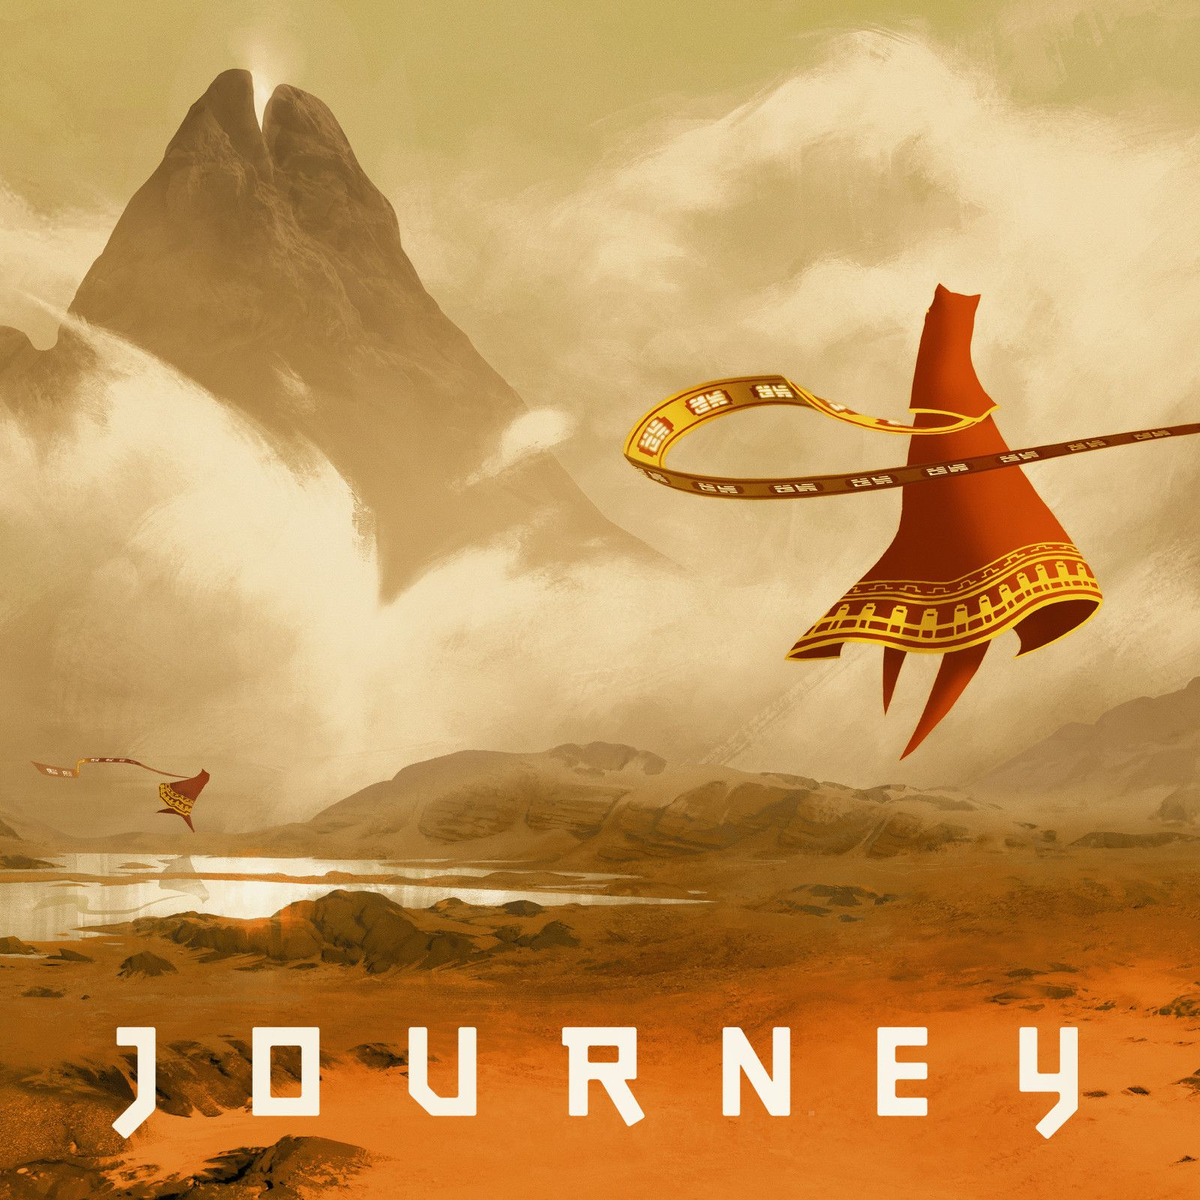 1.18 journey. Journey (игра, 2012). Journey thatgamecompany. Путешествие игра Journey. Джорни путешествие игра.